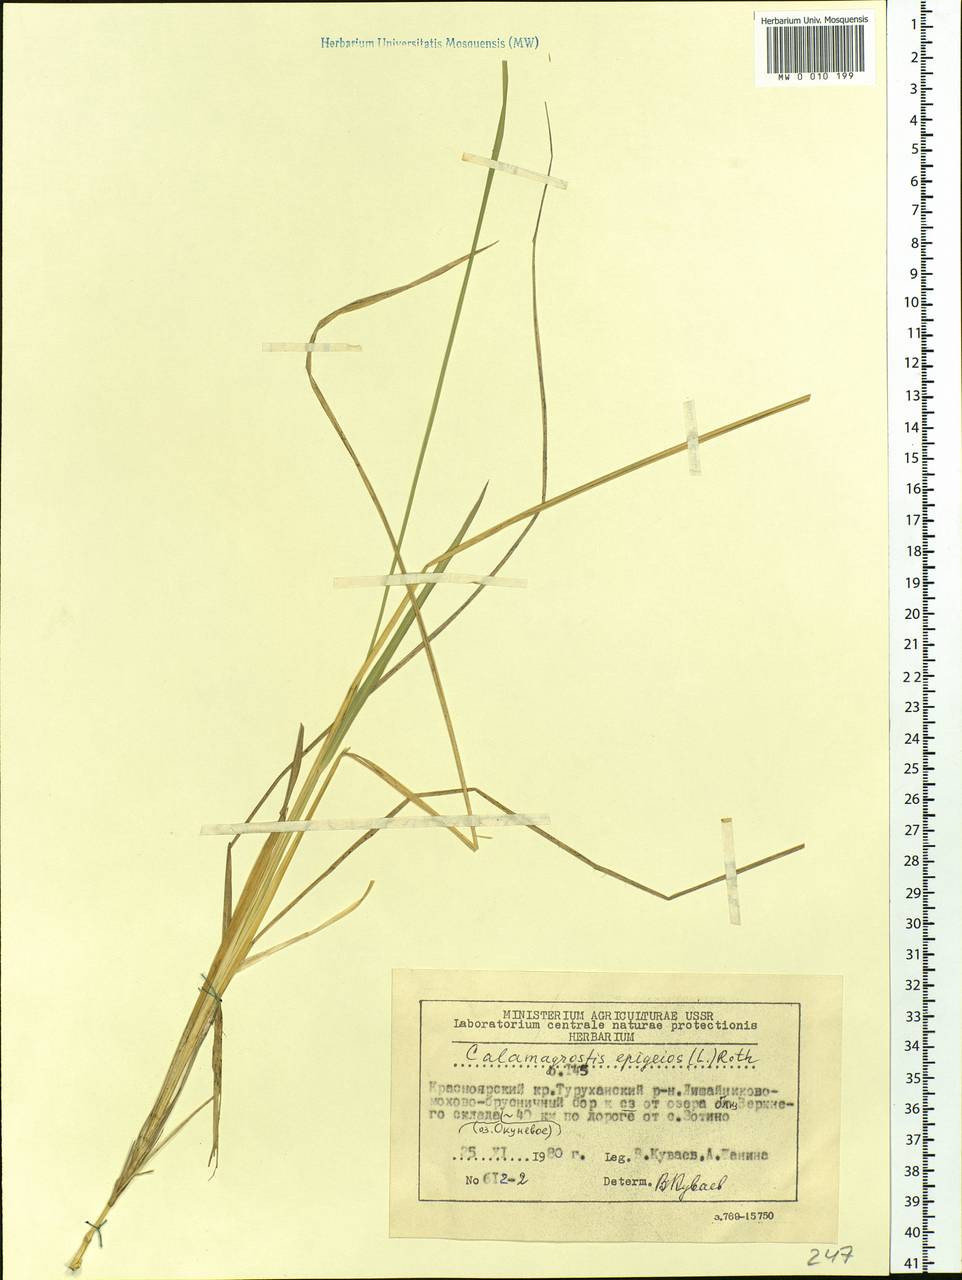 Calamagrostis epigejos (L.) Roth, Siberia, Central Siberia (S3) (Russia)